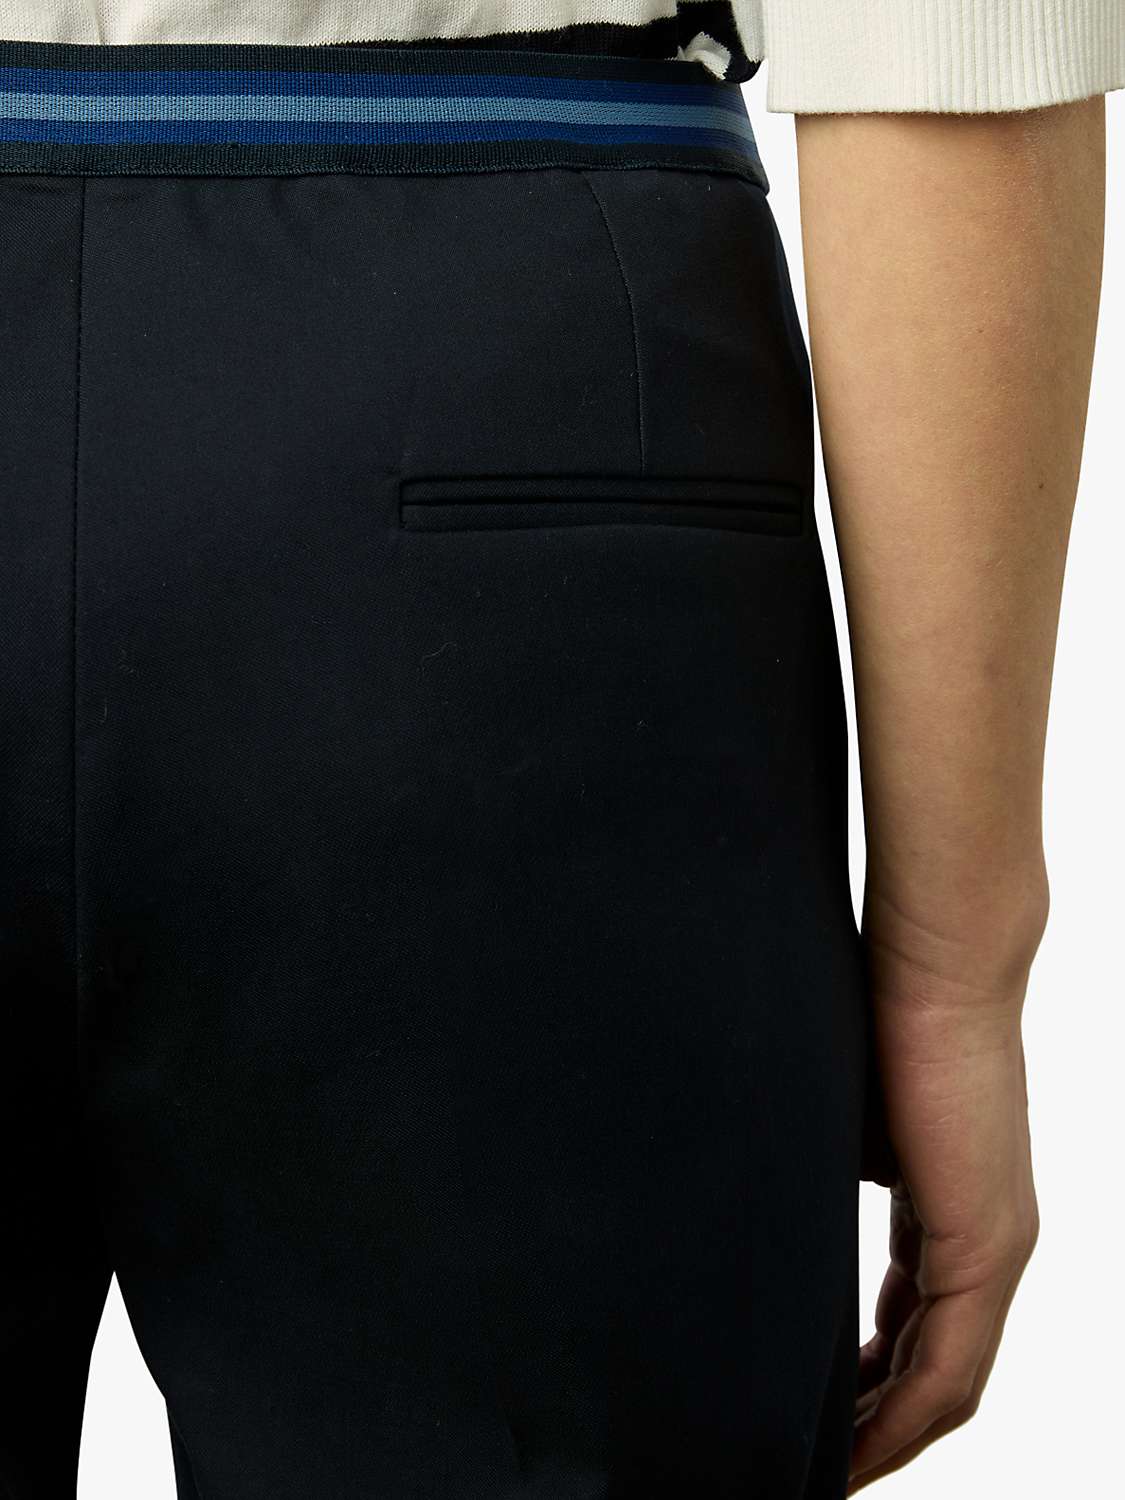 Buy Gerard Darel Causette Slim Leg Trousers Online at johnlewis.com